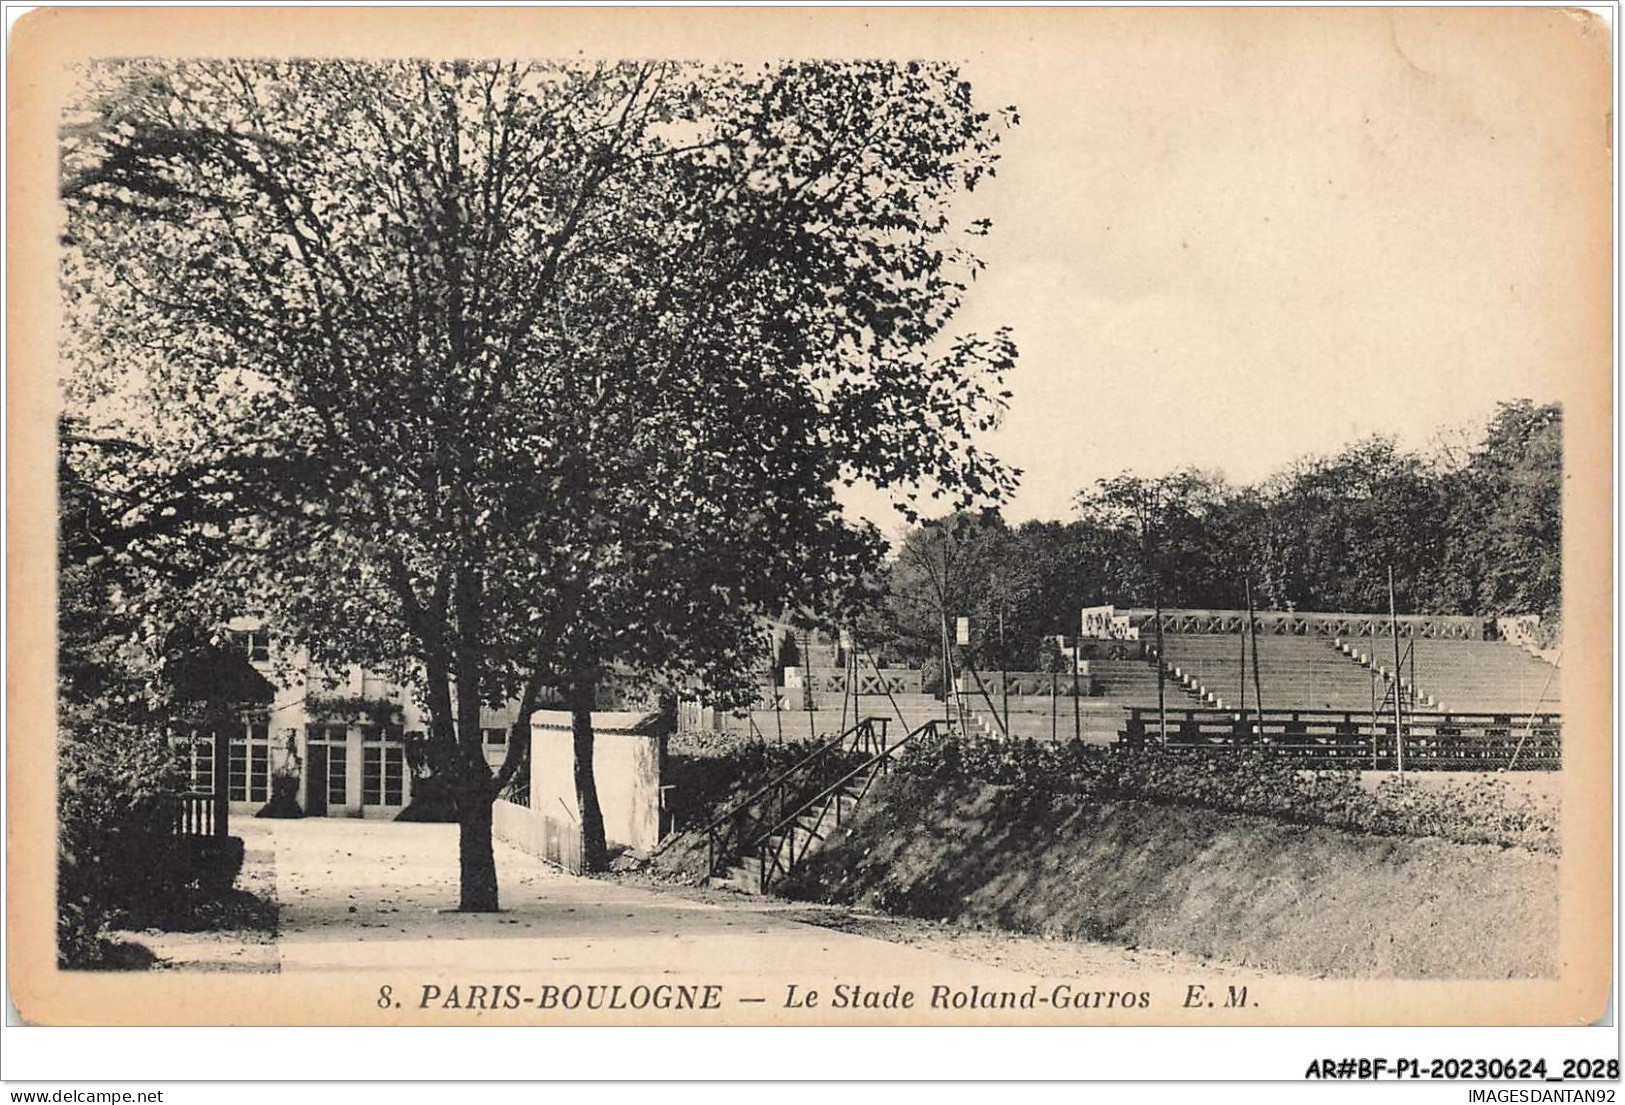 AR#BFP1-92-1016 - PARIS-BOULOGNE - Le Stade Roland-Garros - NÂ°1 - Boulogne Billancourt